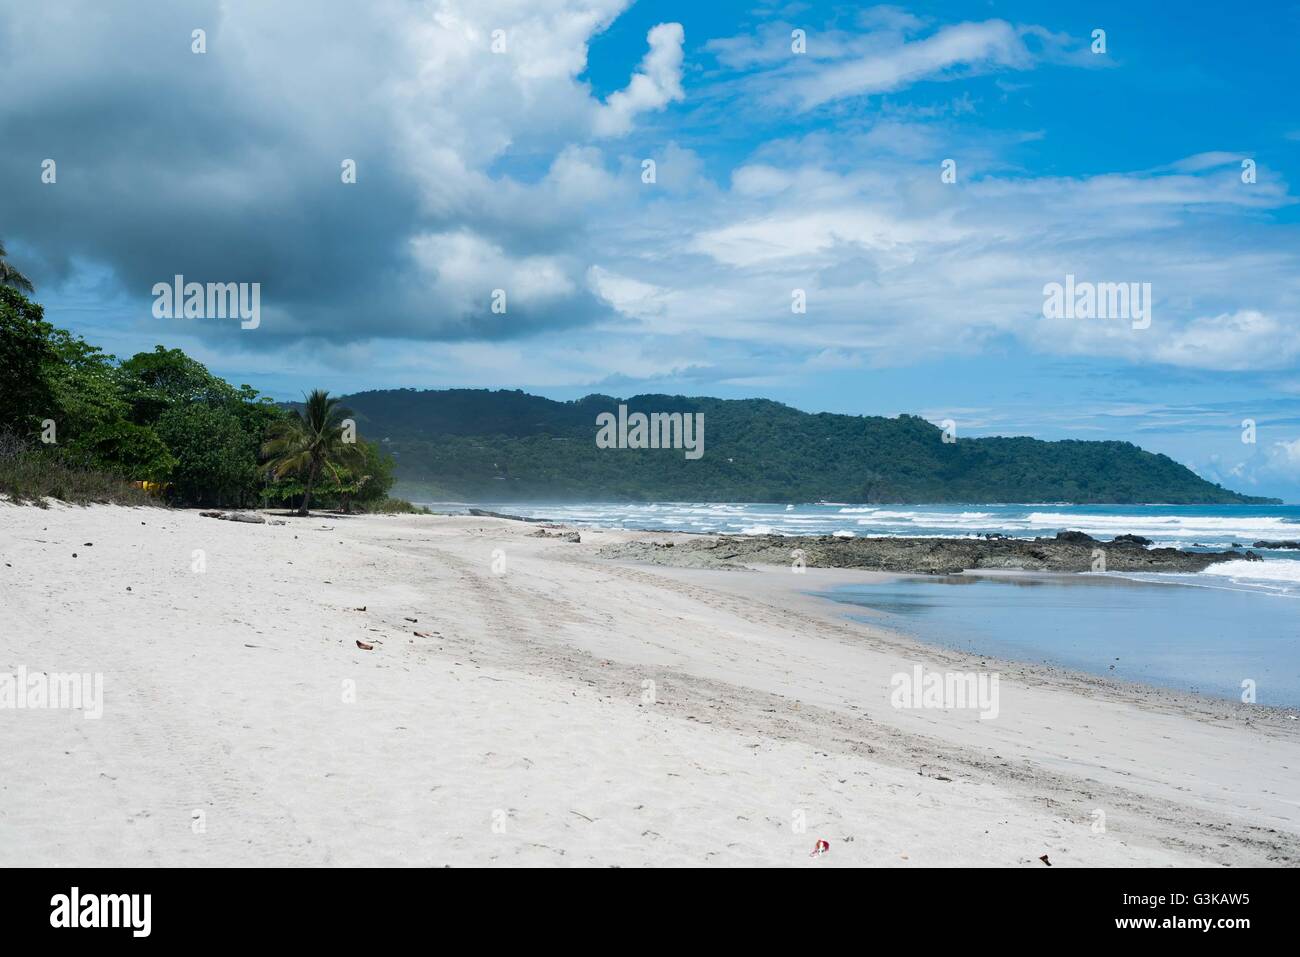 Empty beach in Santa Teresa, Costa Rica Stock Photo